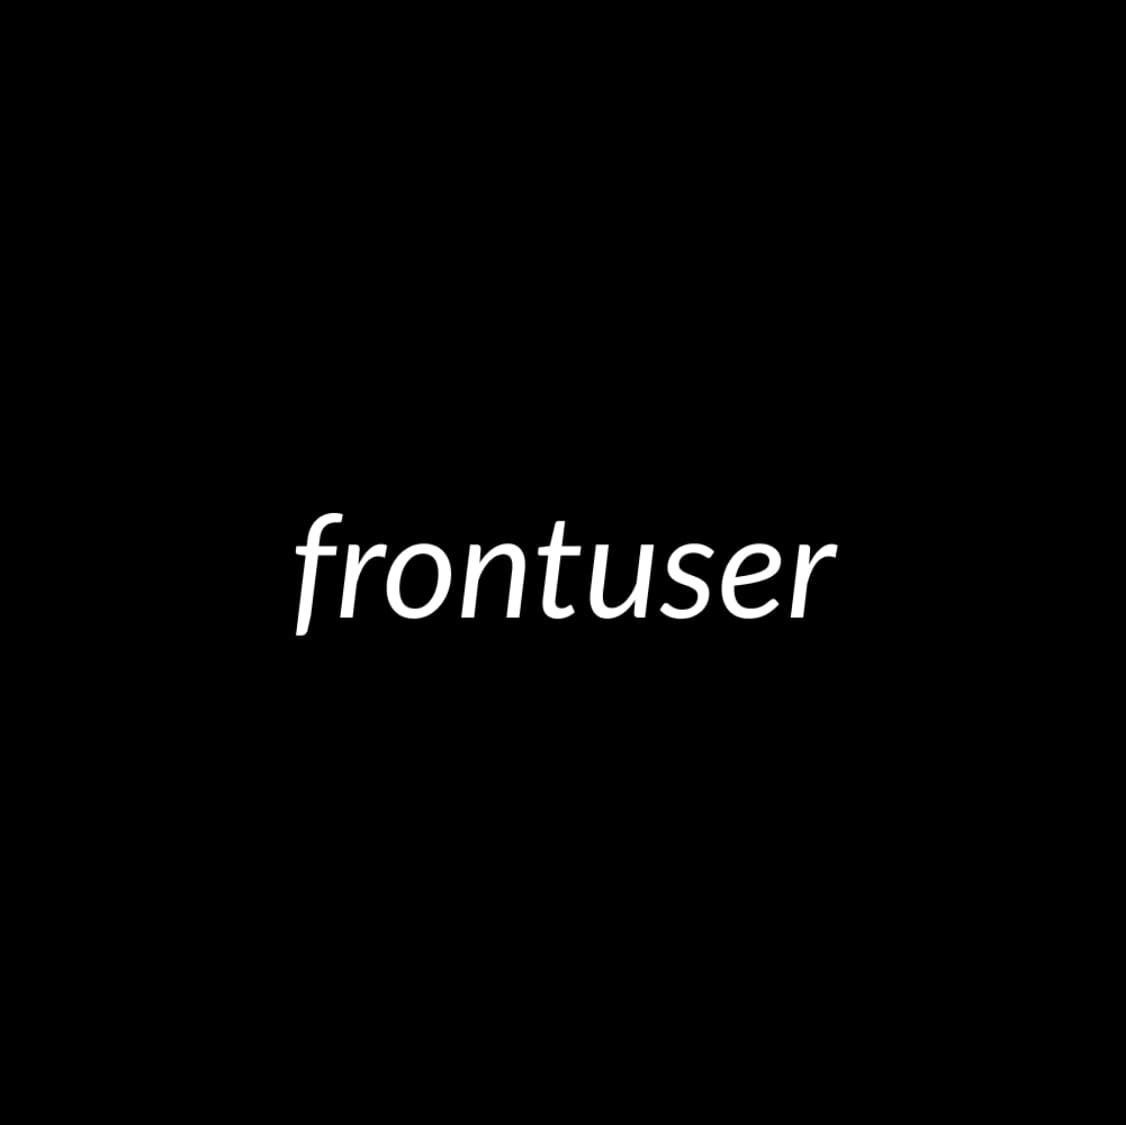 Frontuser's logo